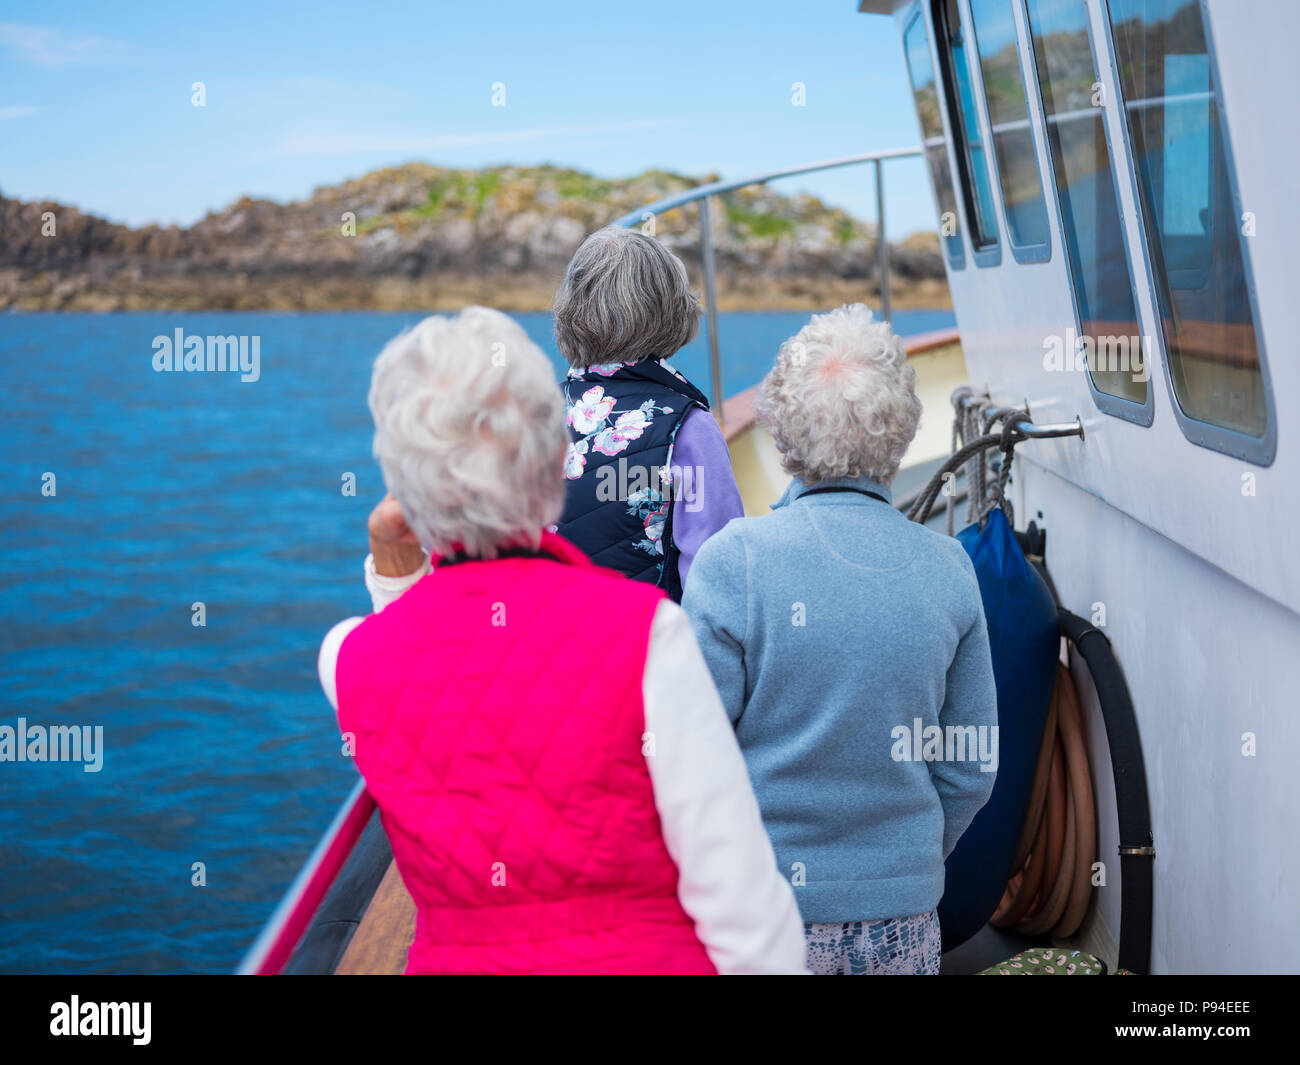 Menschen auf einem Meer safari, Isles of Scilly. Stockfoto